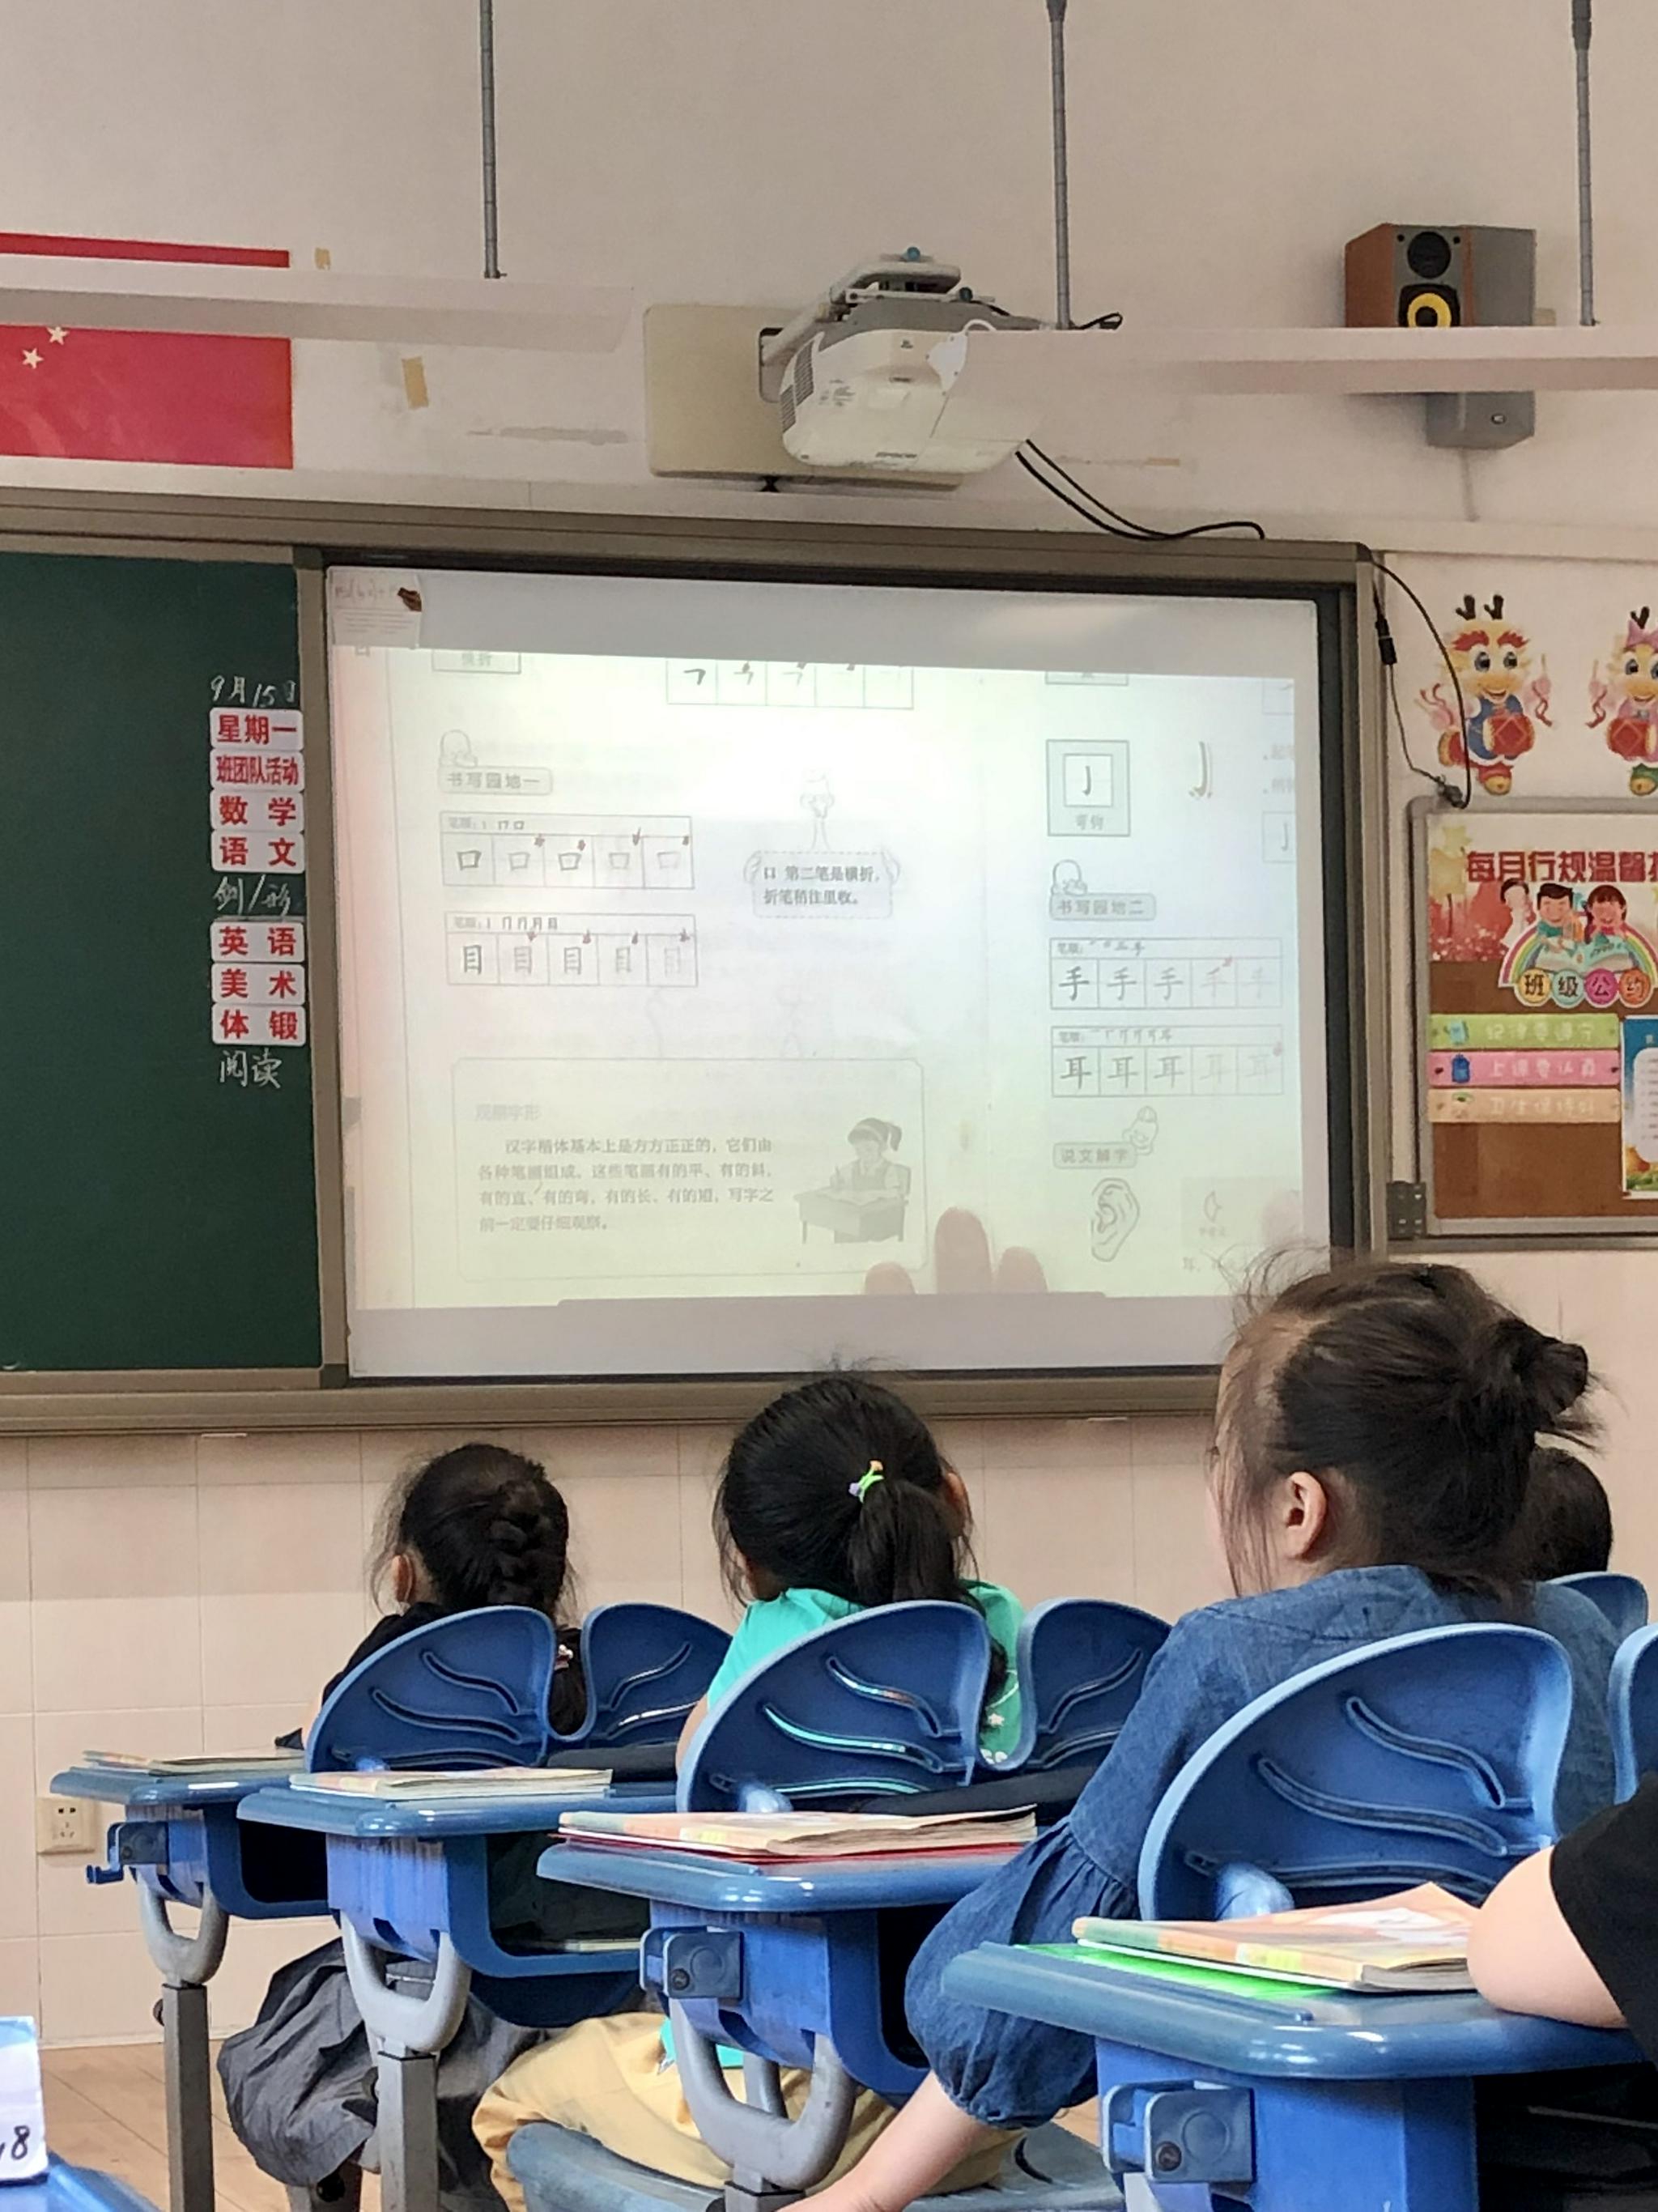 维洛的语文作业被老师投到大屏上展示。 受访者供图